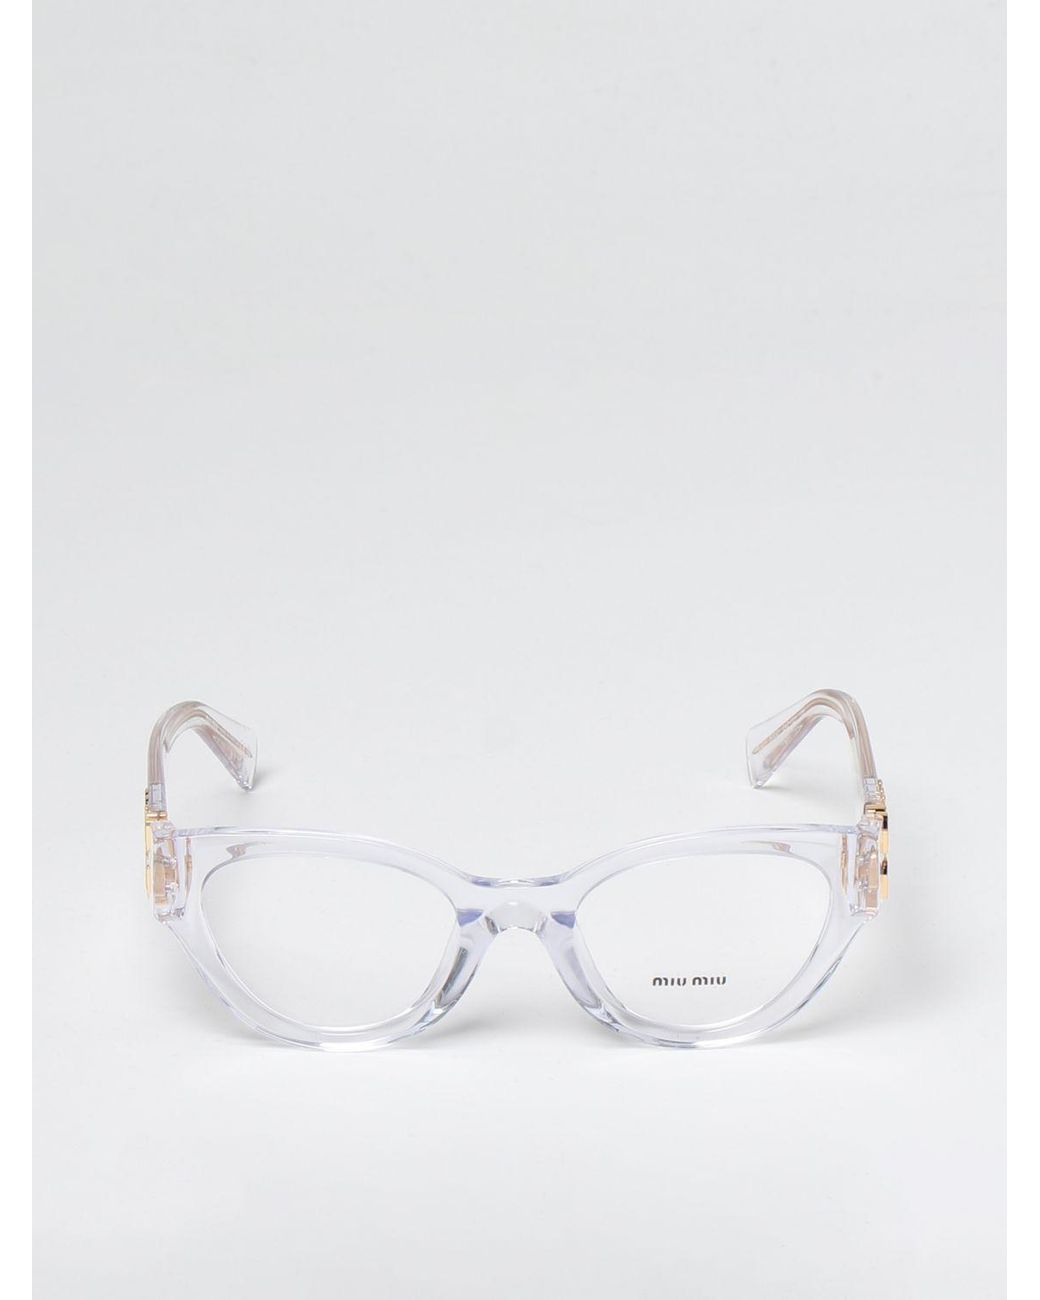 Miu Miu Sunglasses in White | Lyst